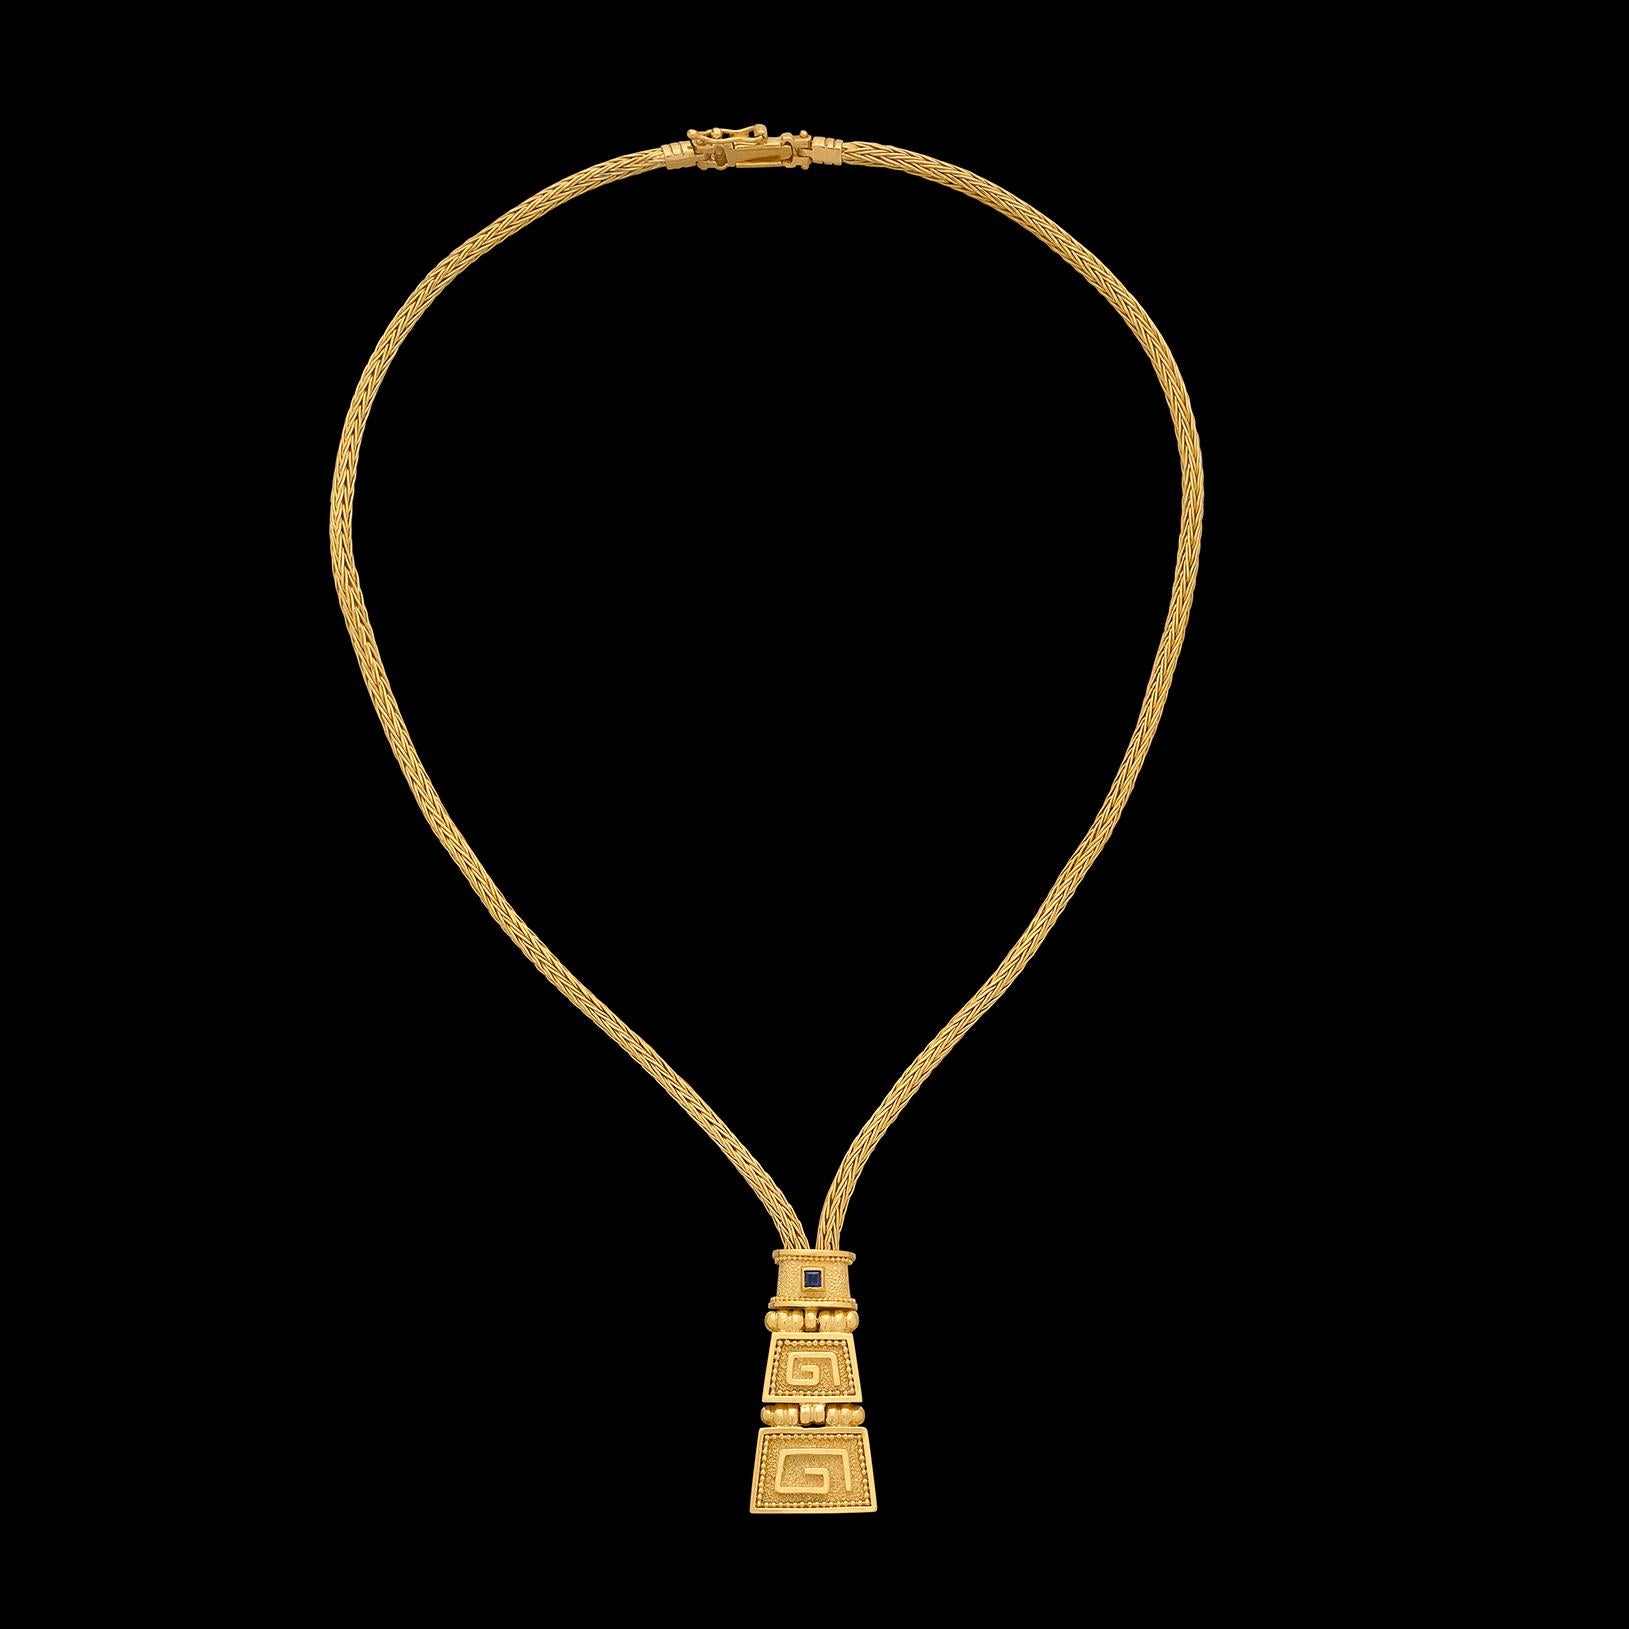 Un vrai coup de tête ! Ce collier en or jaune 18 carats est composé d'une chaîne torsadée en or à laquelle est suspendu un pendentif inspiré d'un motif grec. Le pendentif en or est serti d'un saphir bleu qui apporte la touche de couleur parfaite. La